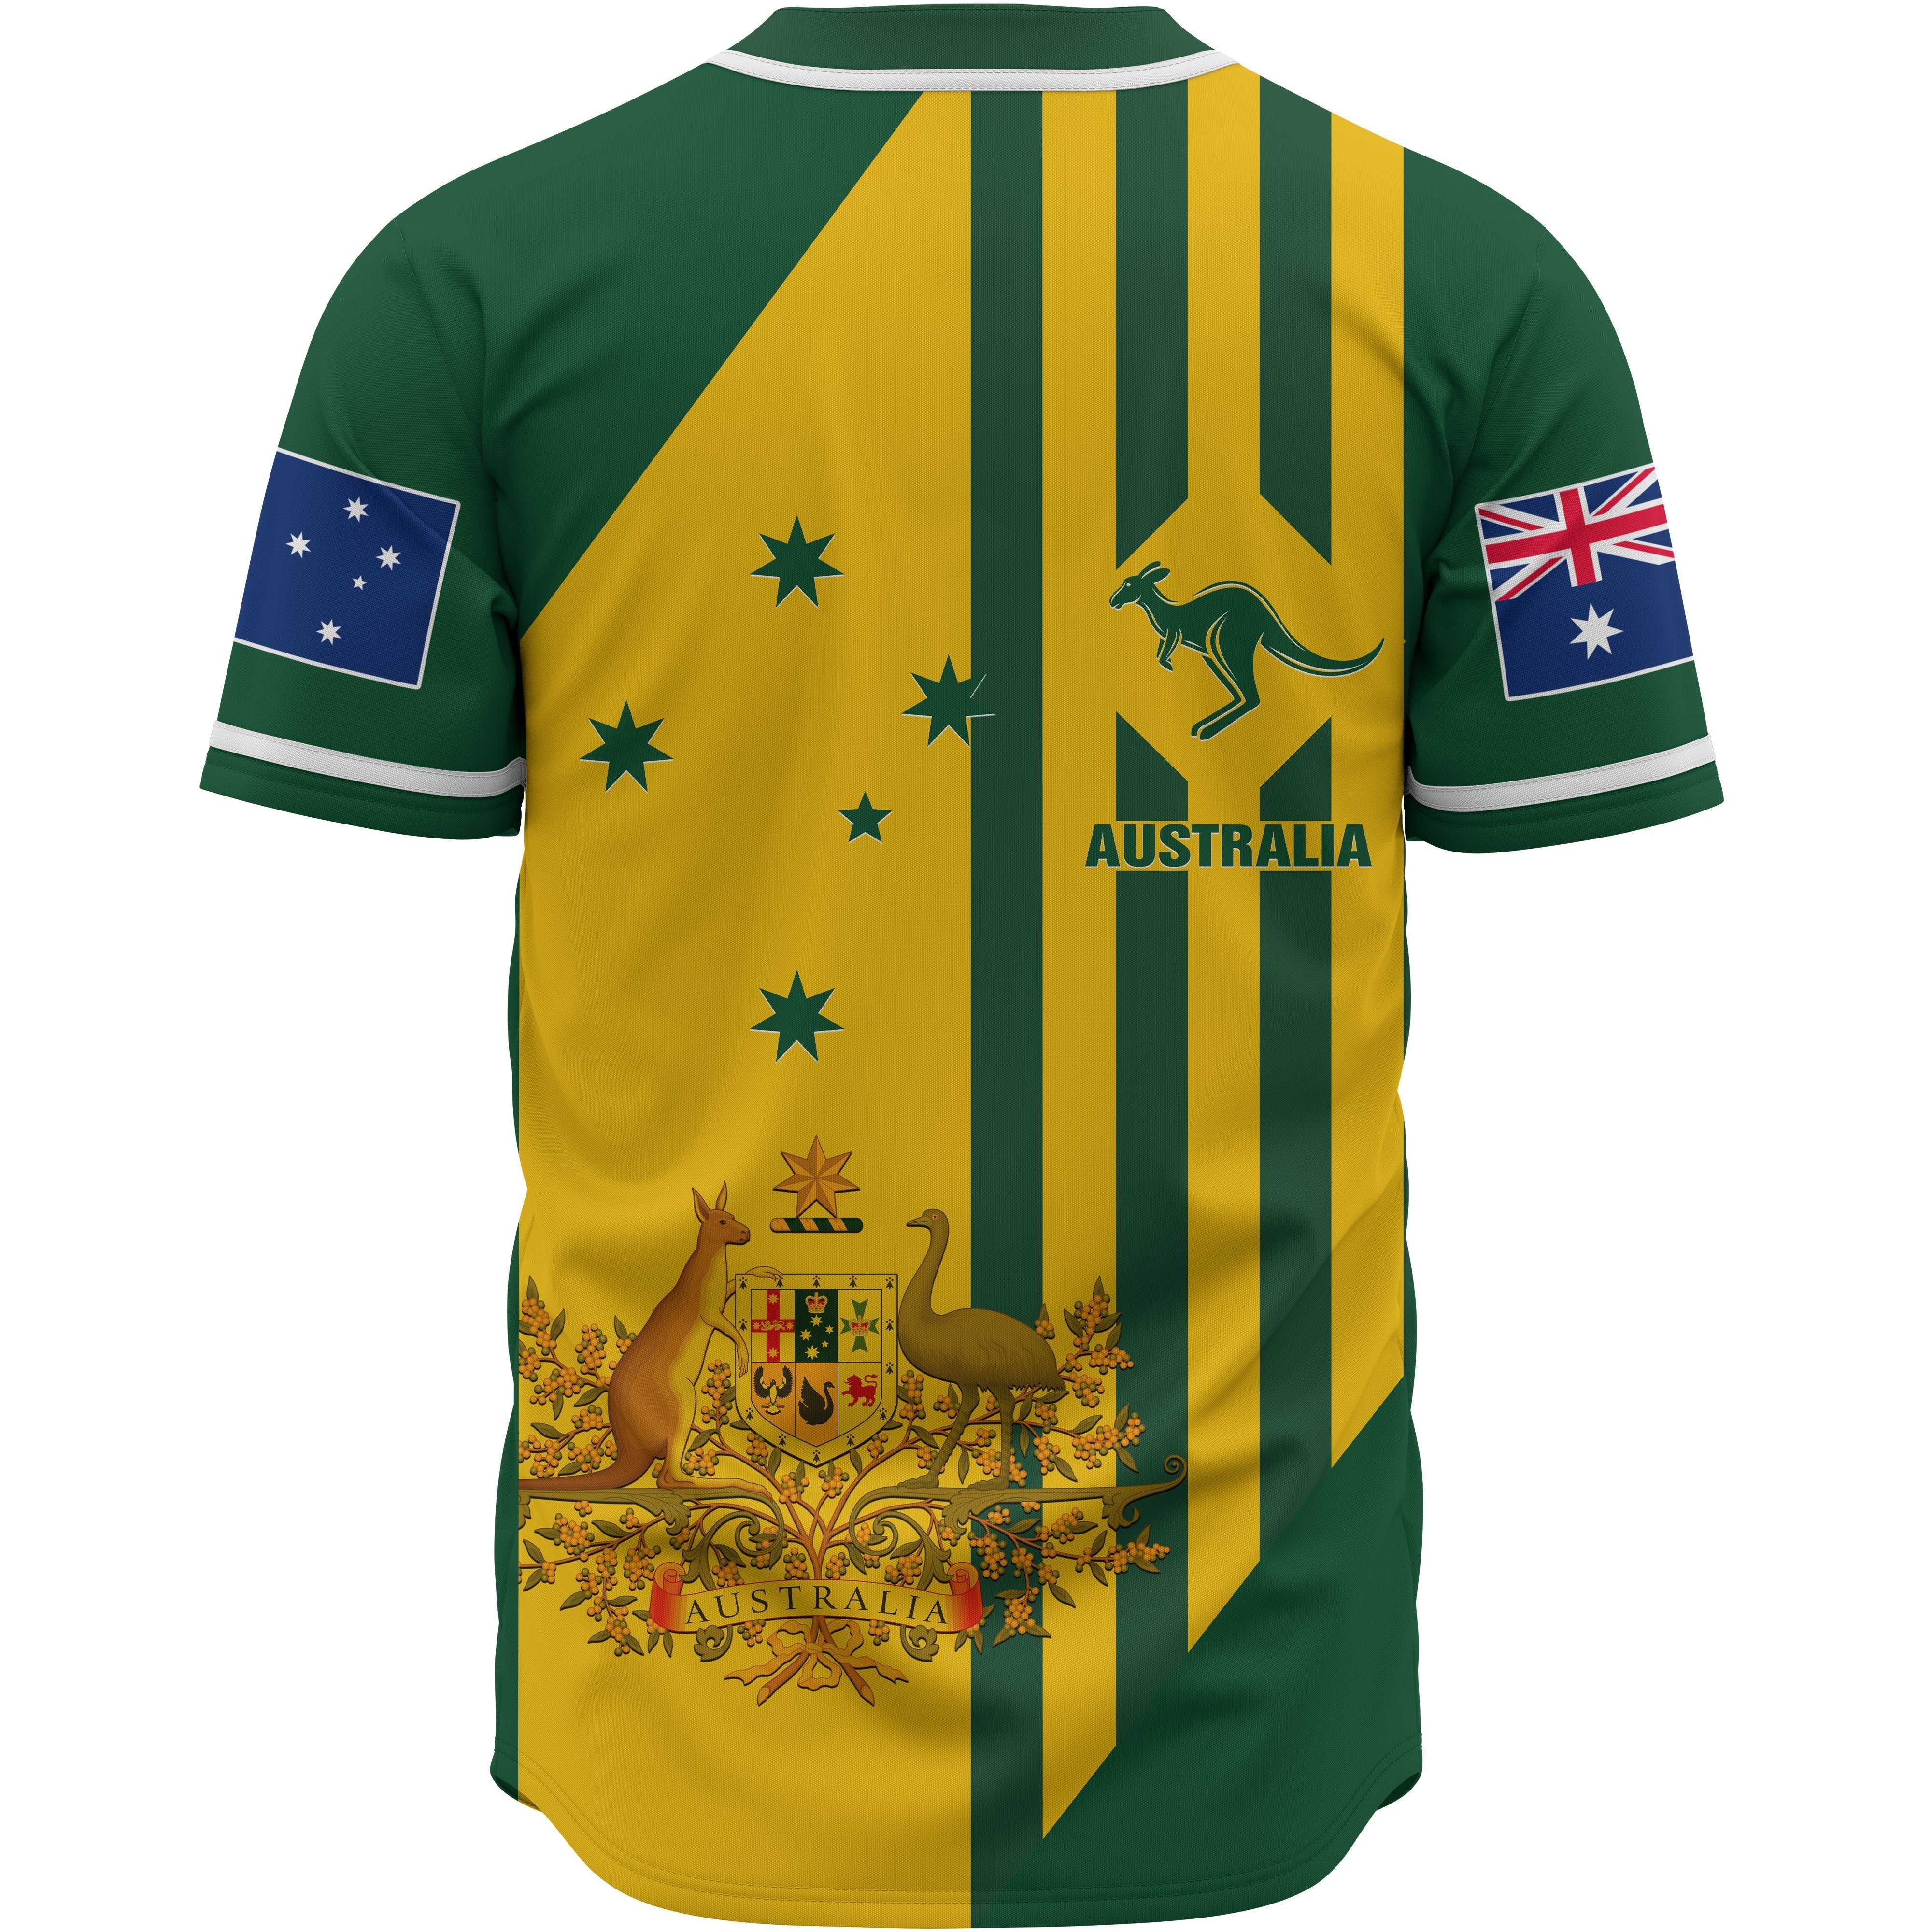 baseball-shirt-australia-kangaroo-sign-national-color